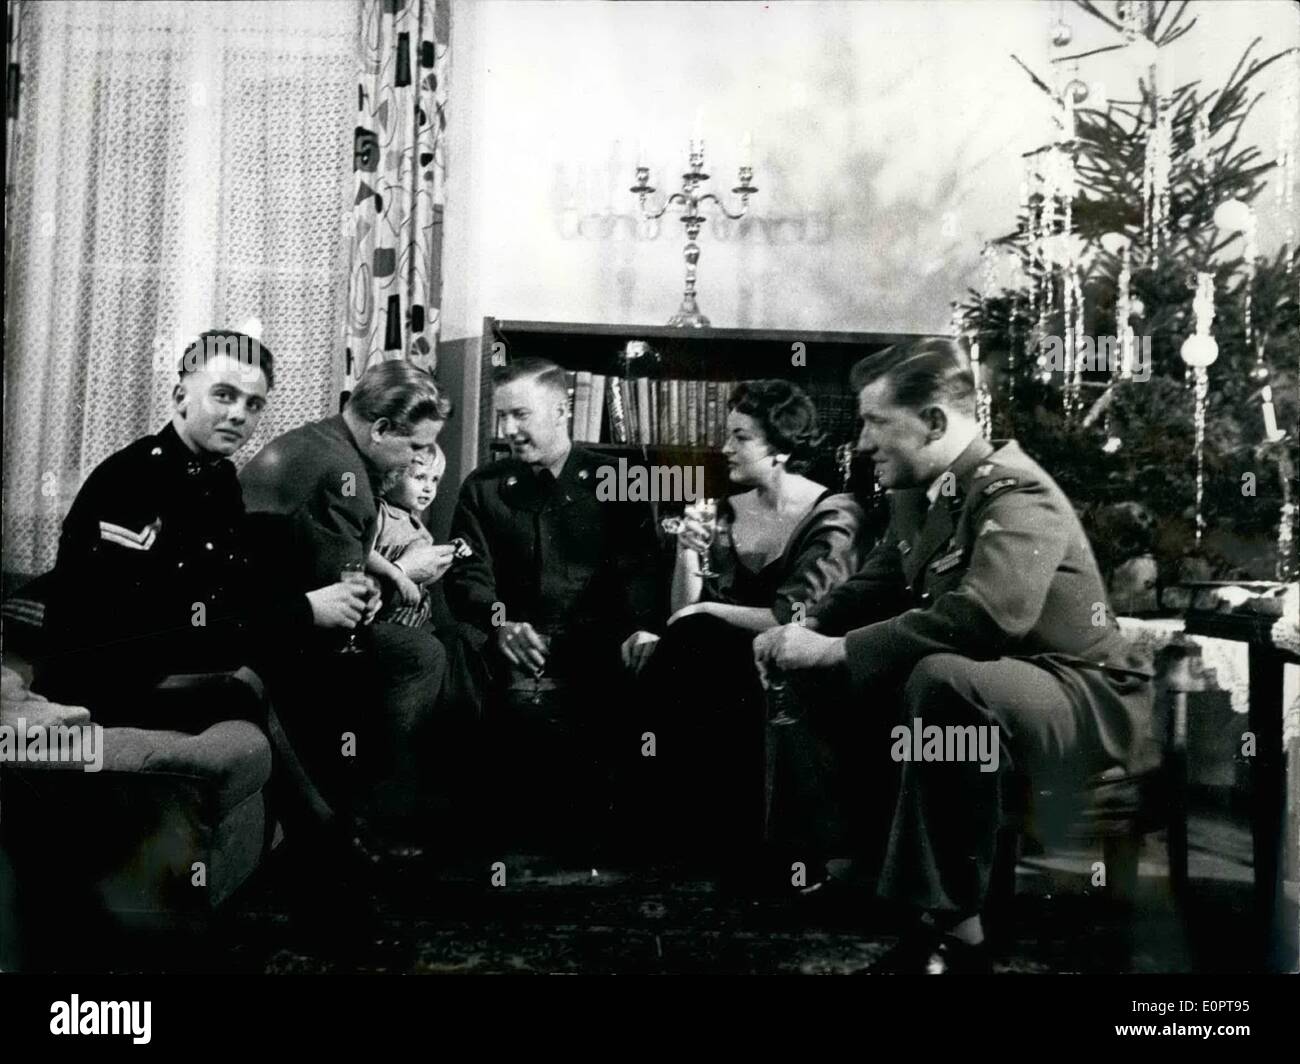 Le 12 décembre 1956 - soldats alliés des garnisons de Berlin ont été invités par les familles de Berlin pour prendre part à la célébration de Noël - dans leur maison. Photo montre une famille de Berlin ainsi que les soldats qui venaient de différentes garnison de Berlin (anglais, américain, français) Banque D'Images